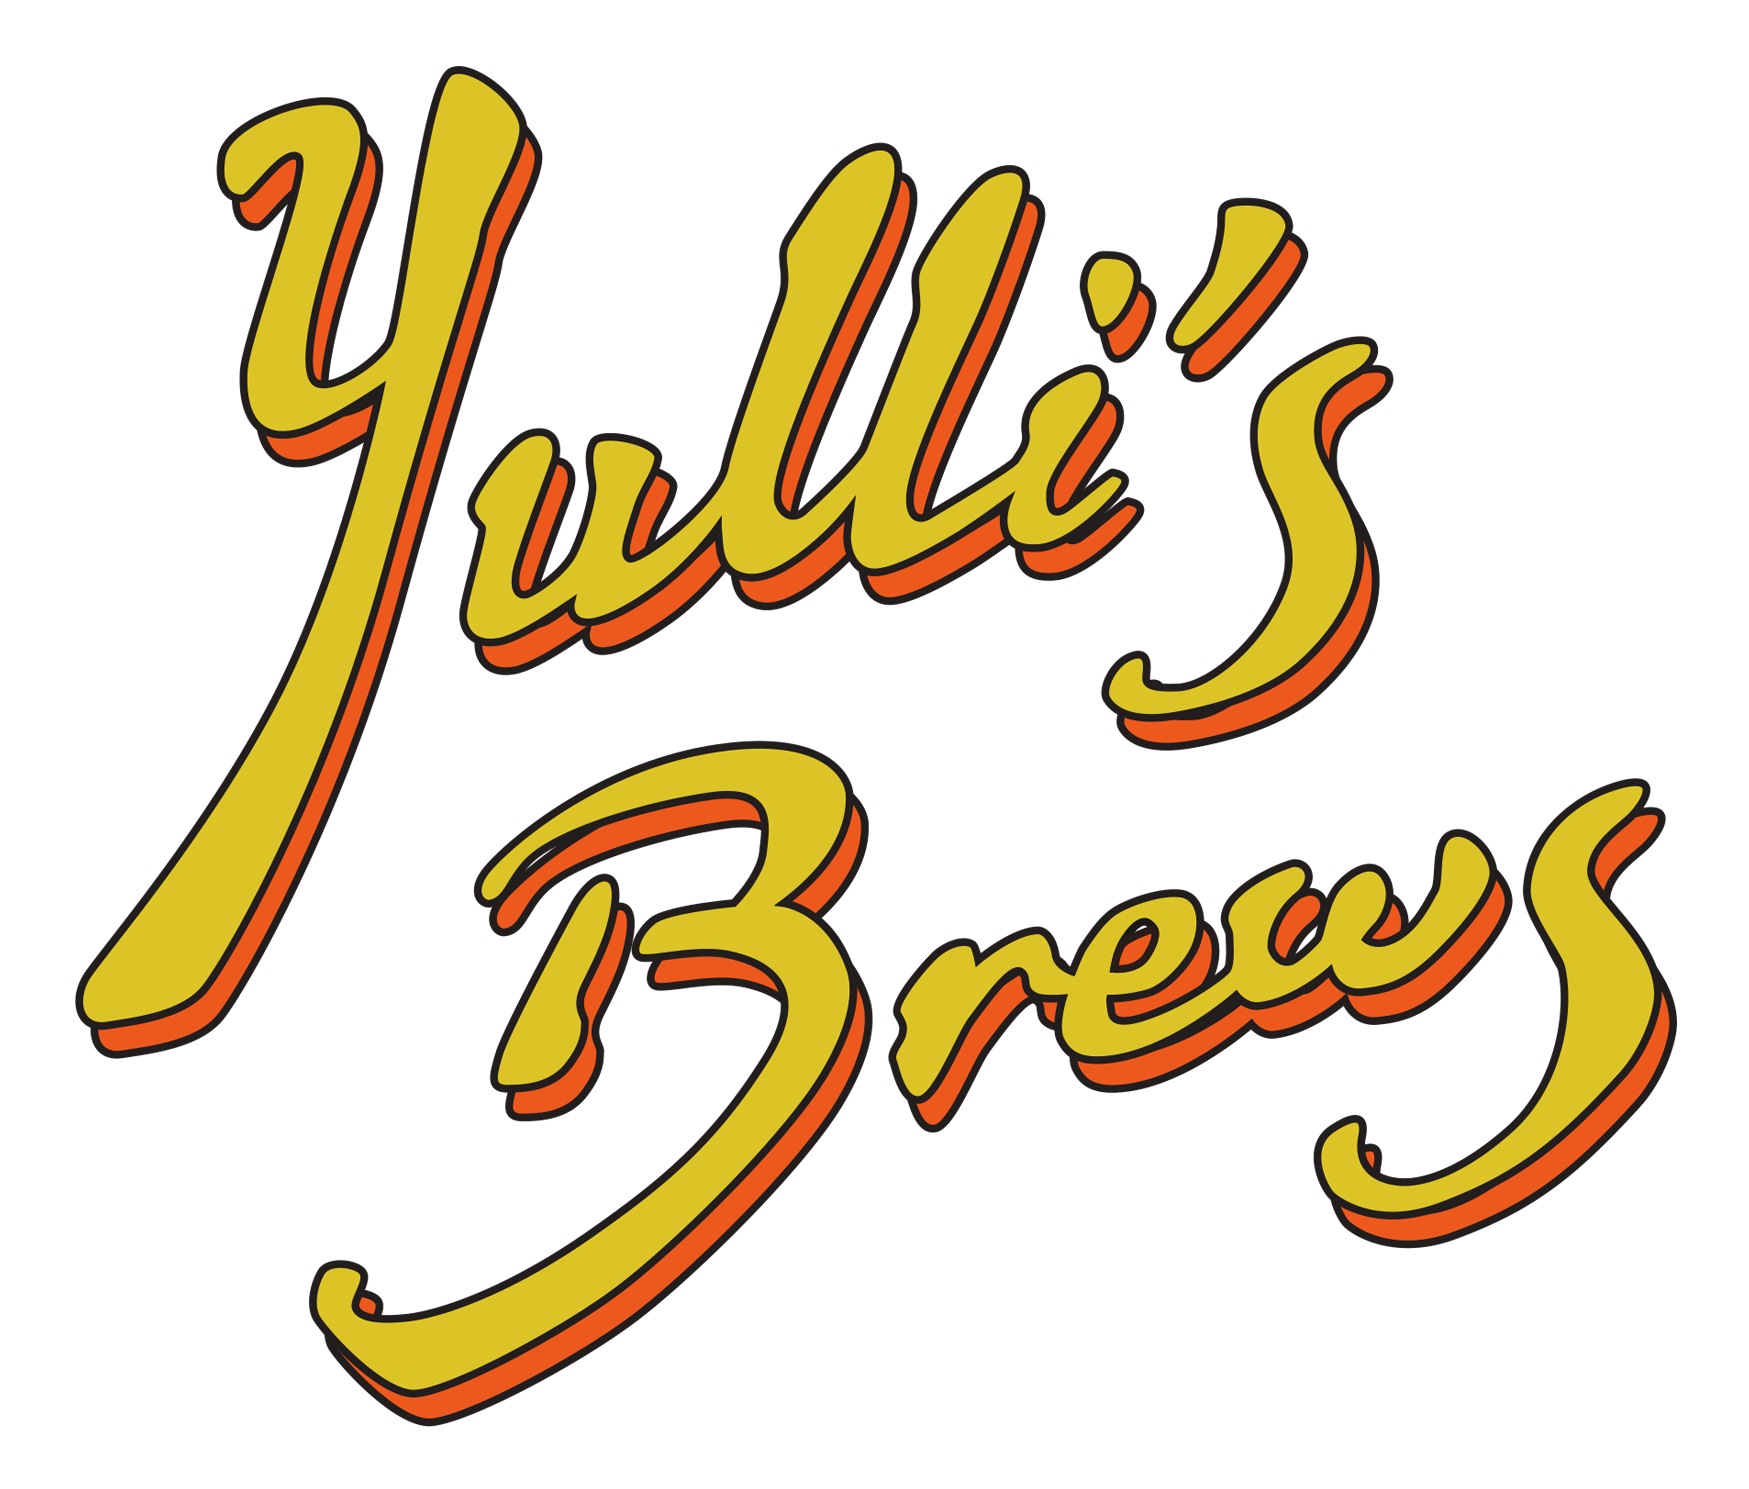 Yullis Brews